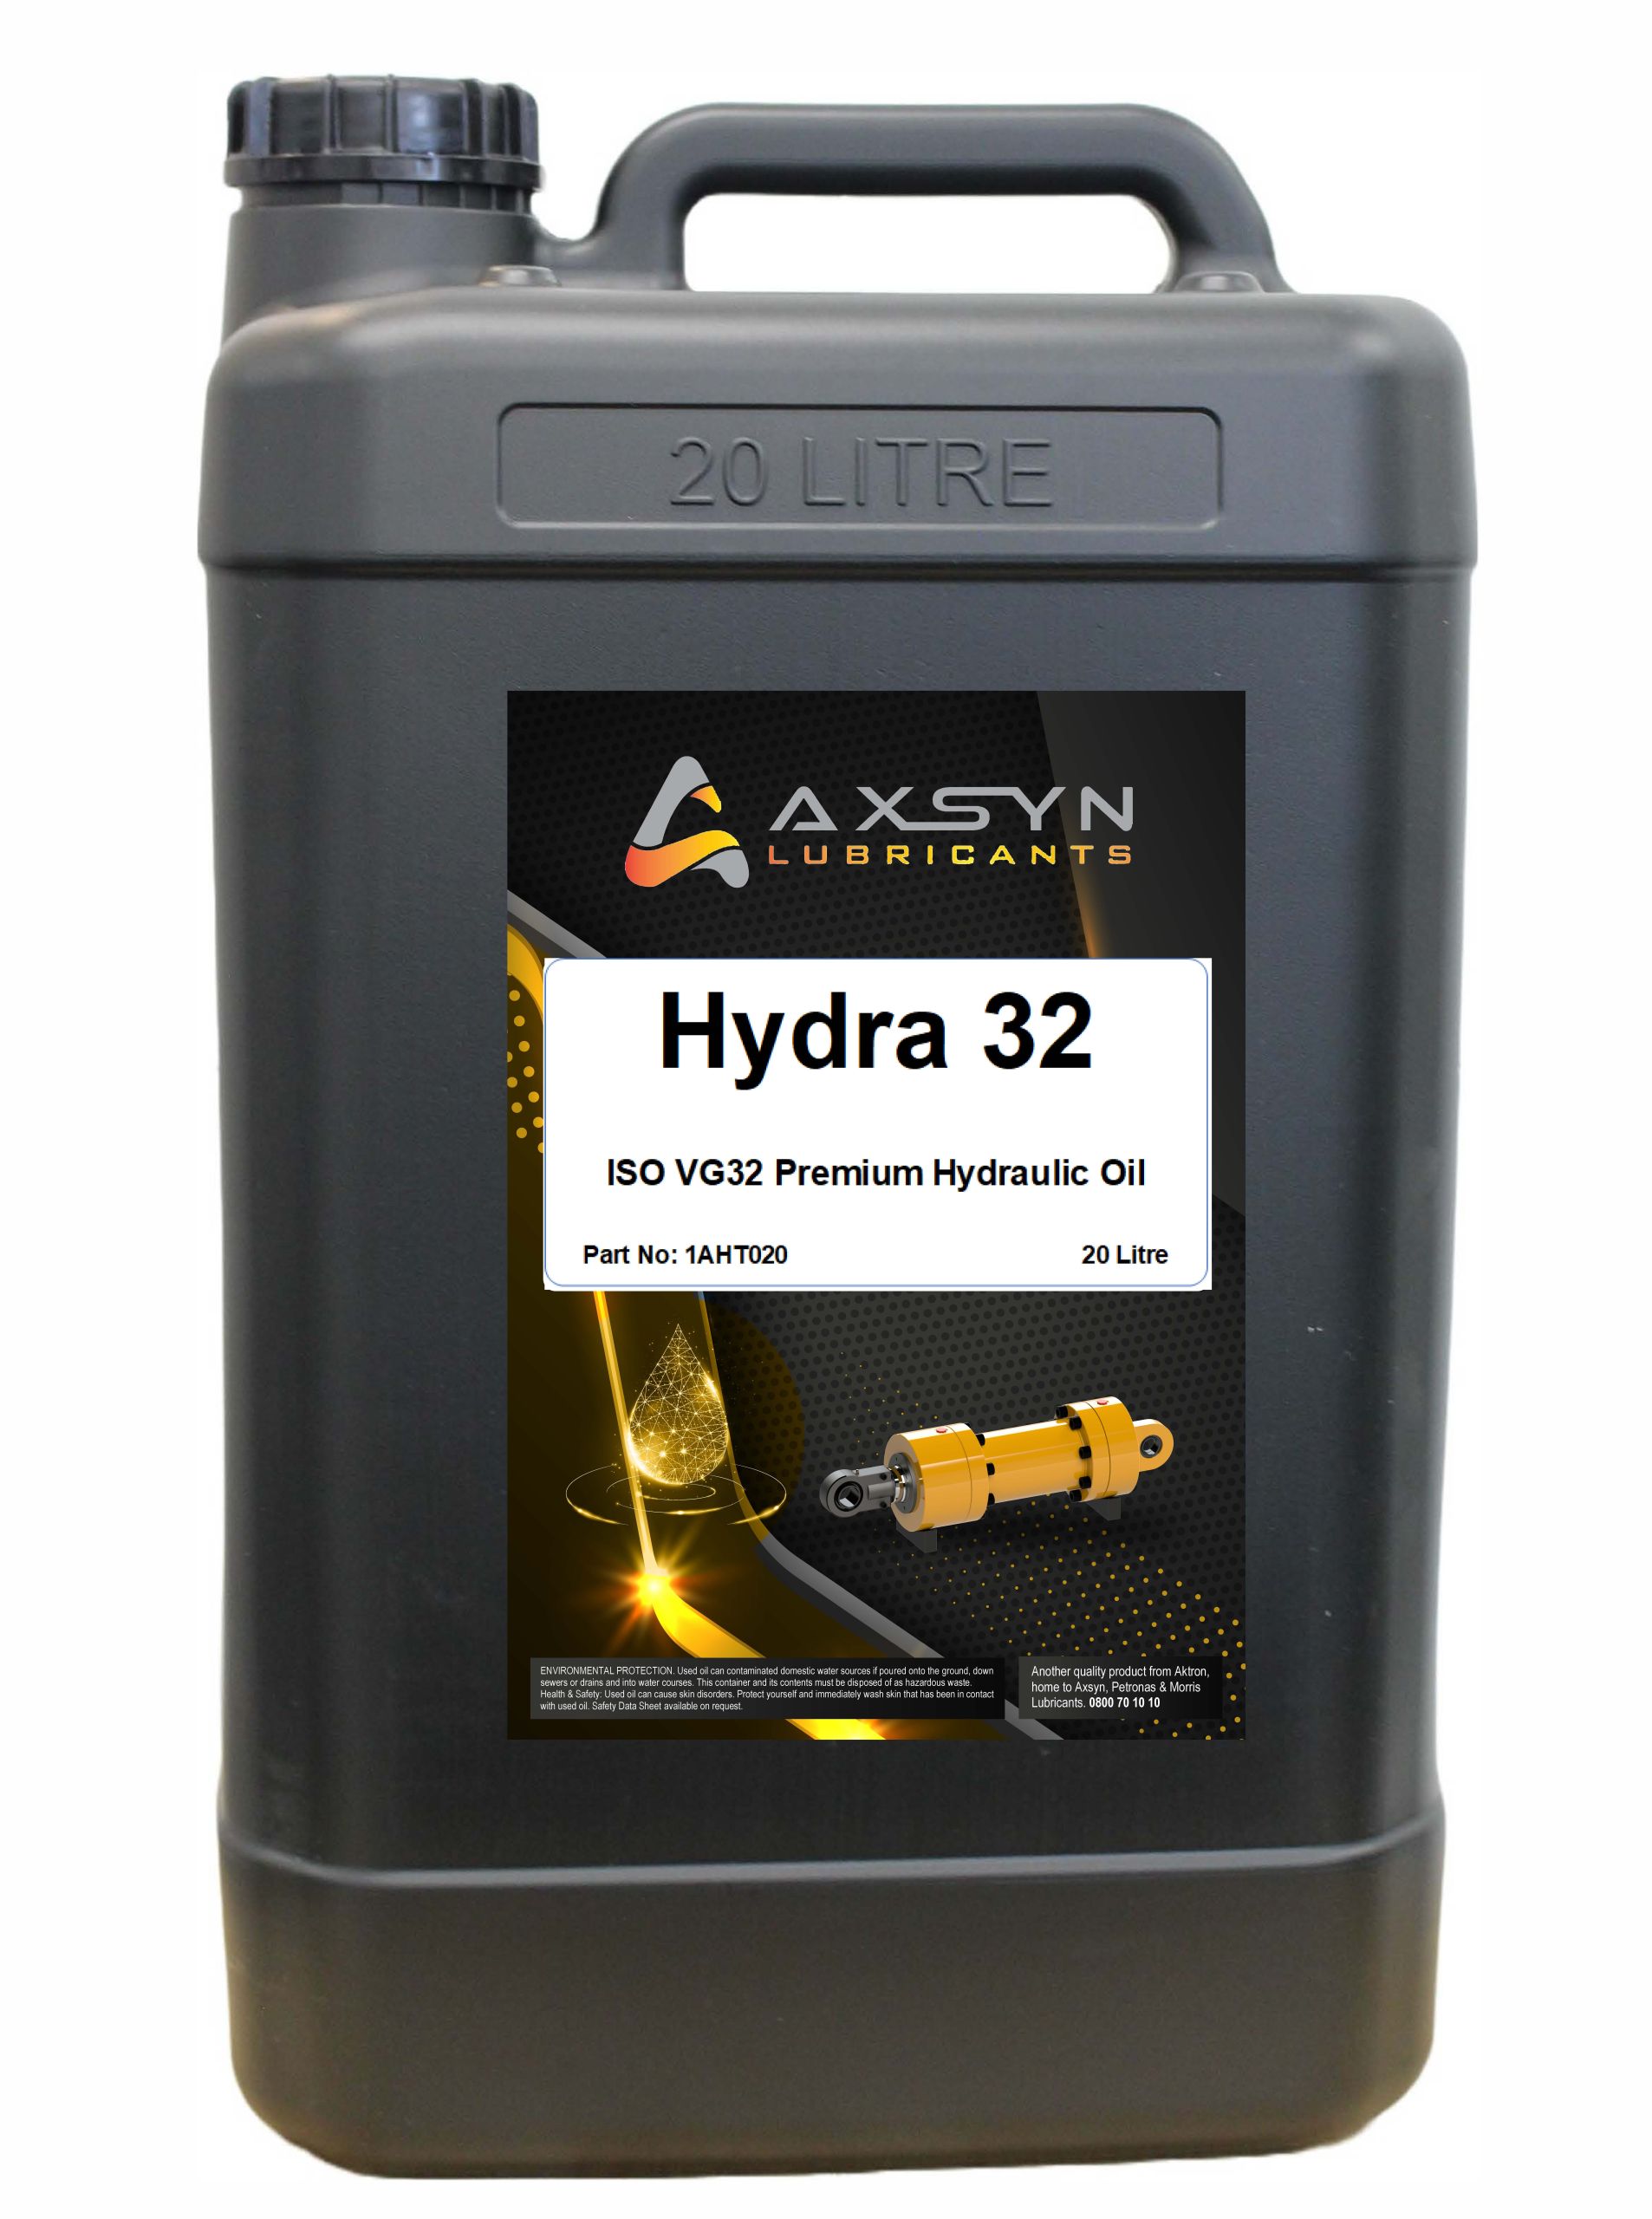 Axsyn Hydra 32